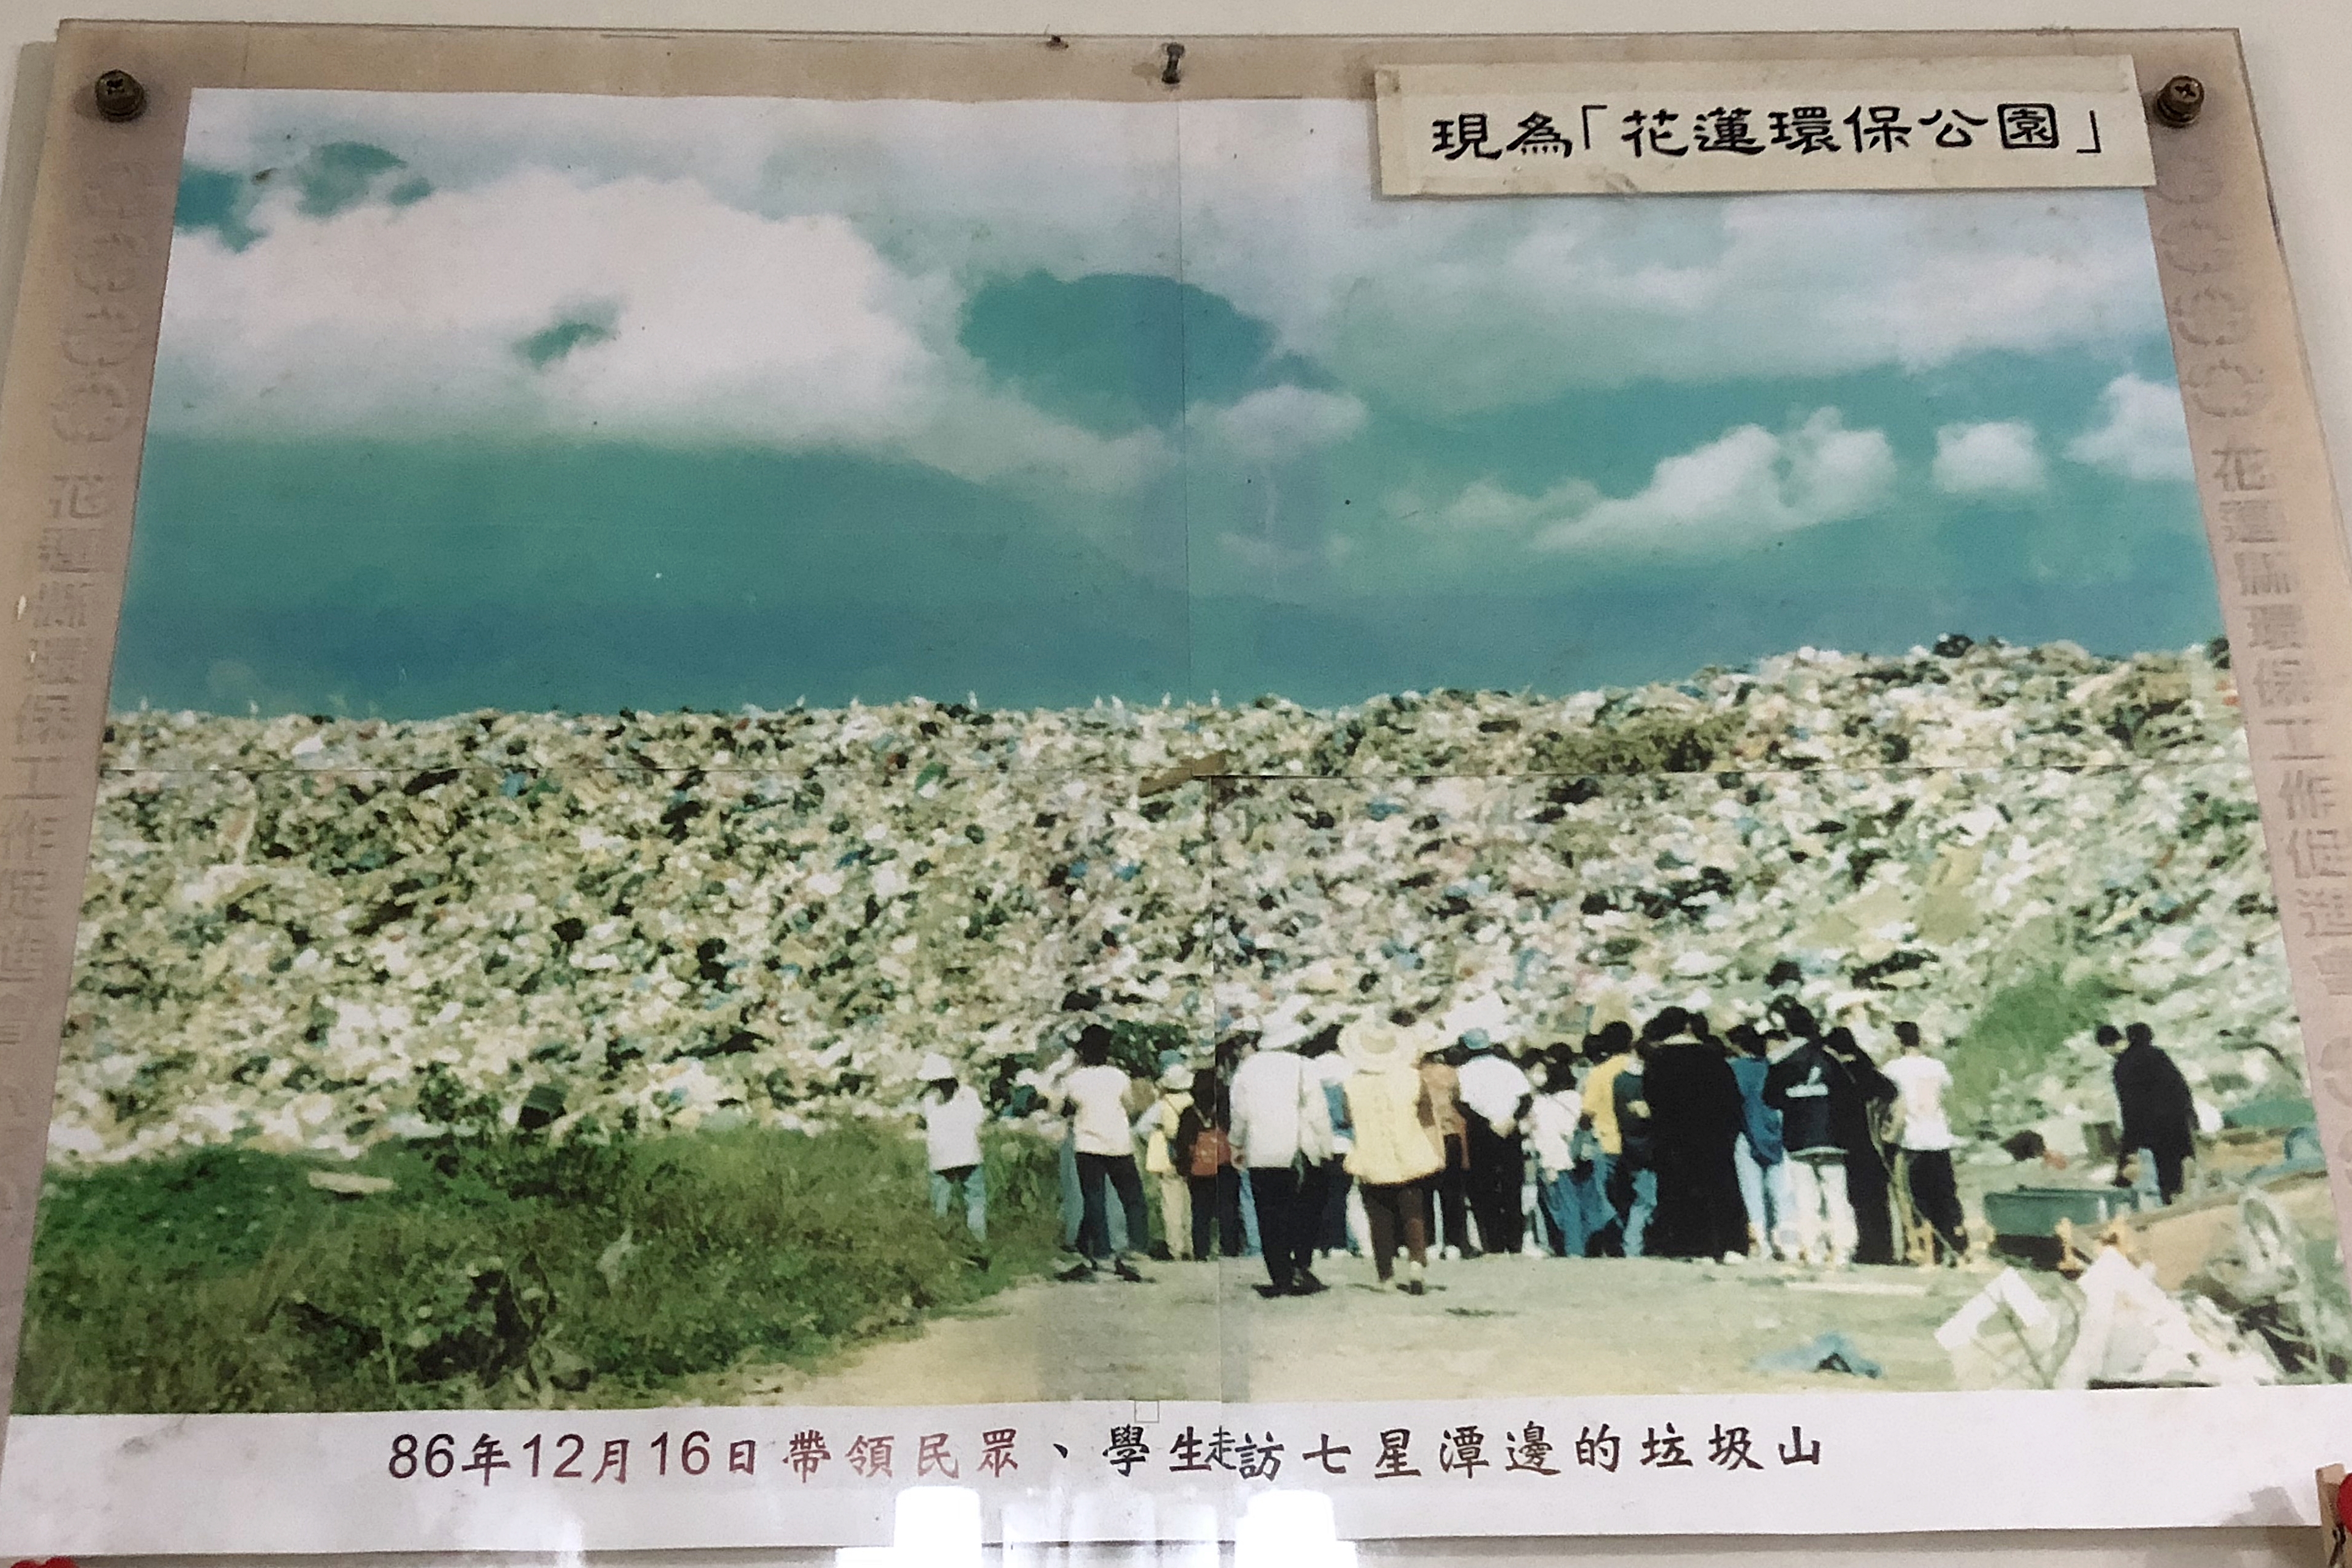 帶民眾、學生走訪七星潭邊的垃圾山照片(第二大段最底部)